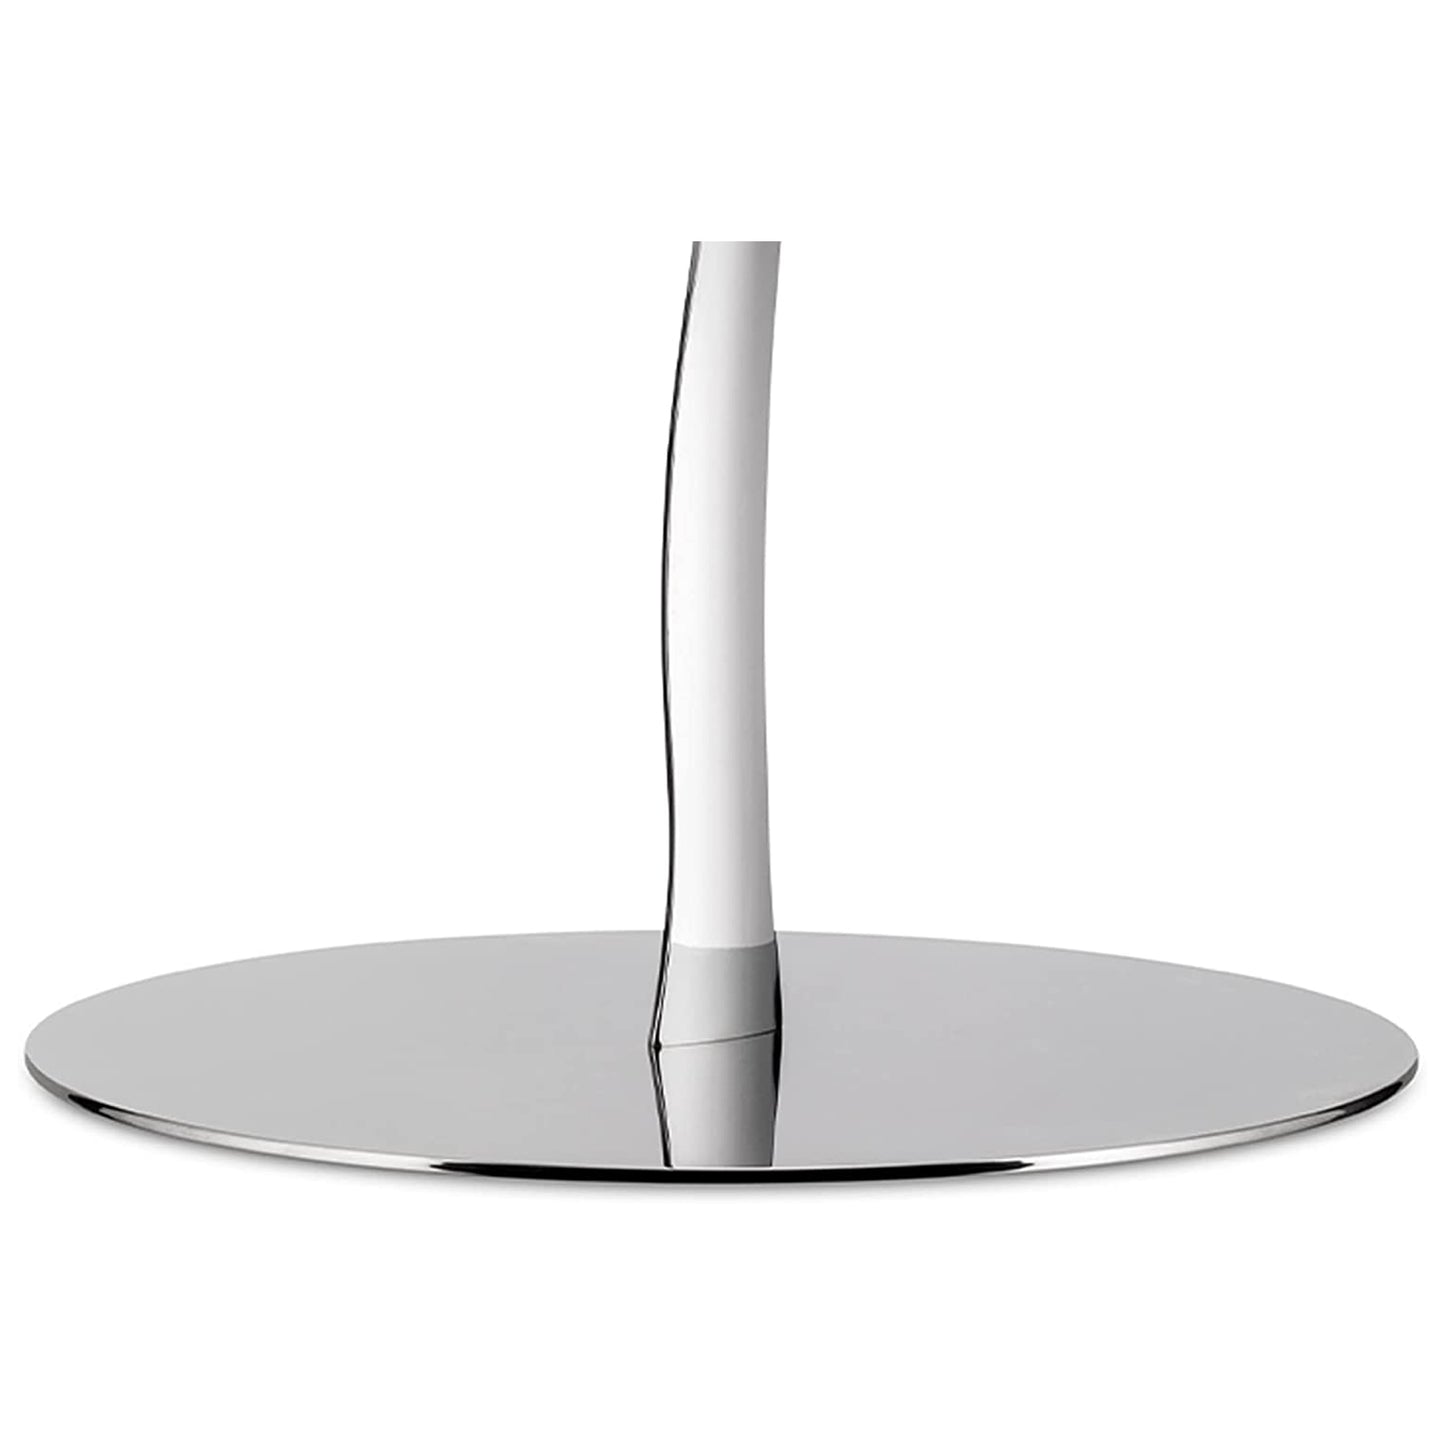 Alessi Mediterraneo ESI02 - Design Küchenrollenhalter, aus Edelstahl, glänzend poliert, 14 x 18.5 x 22.5 cm